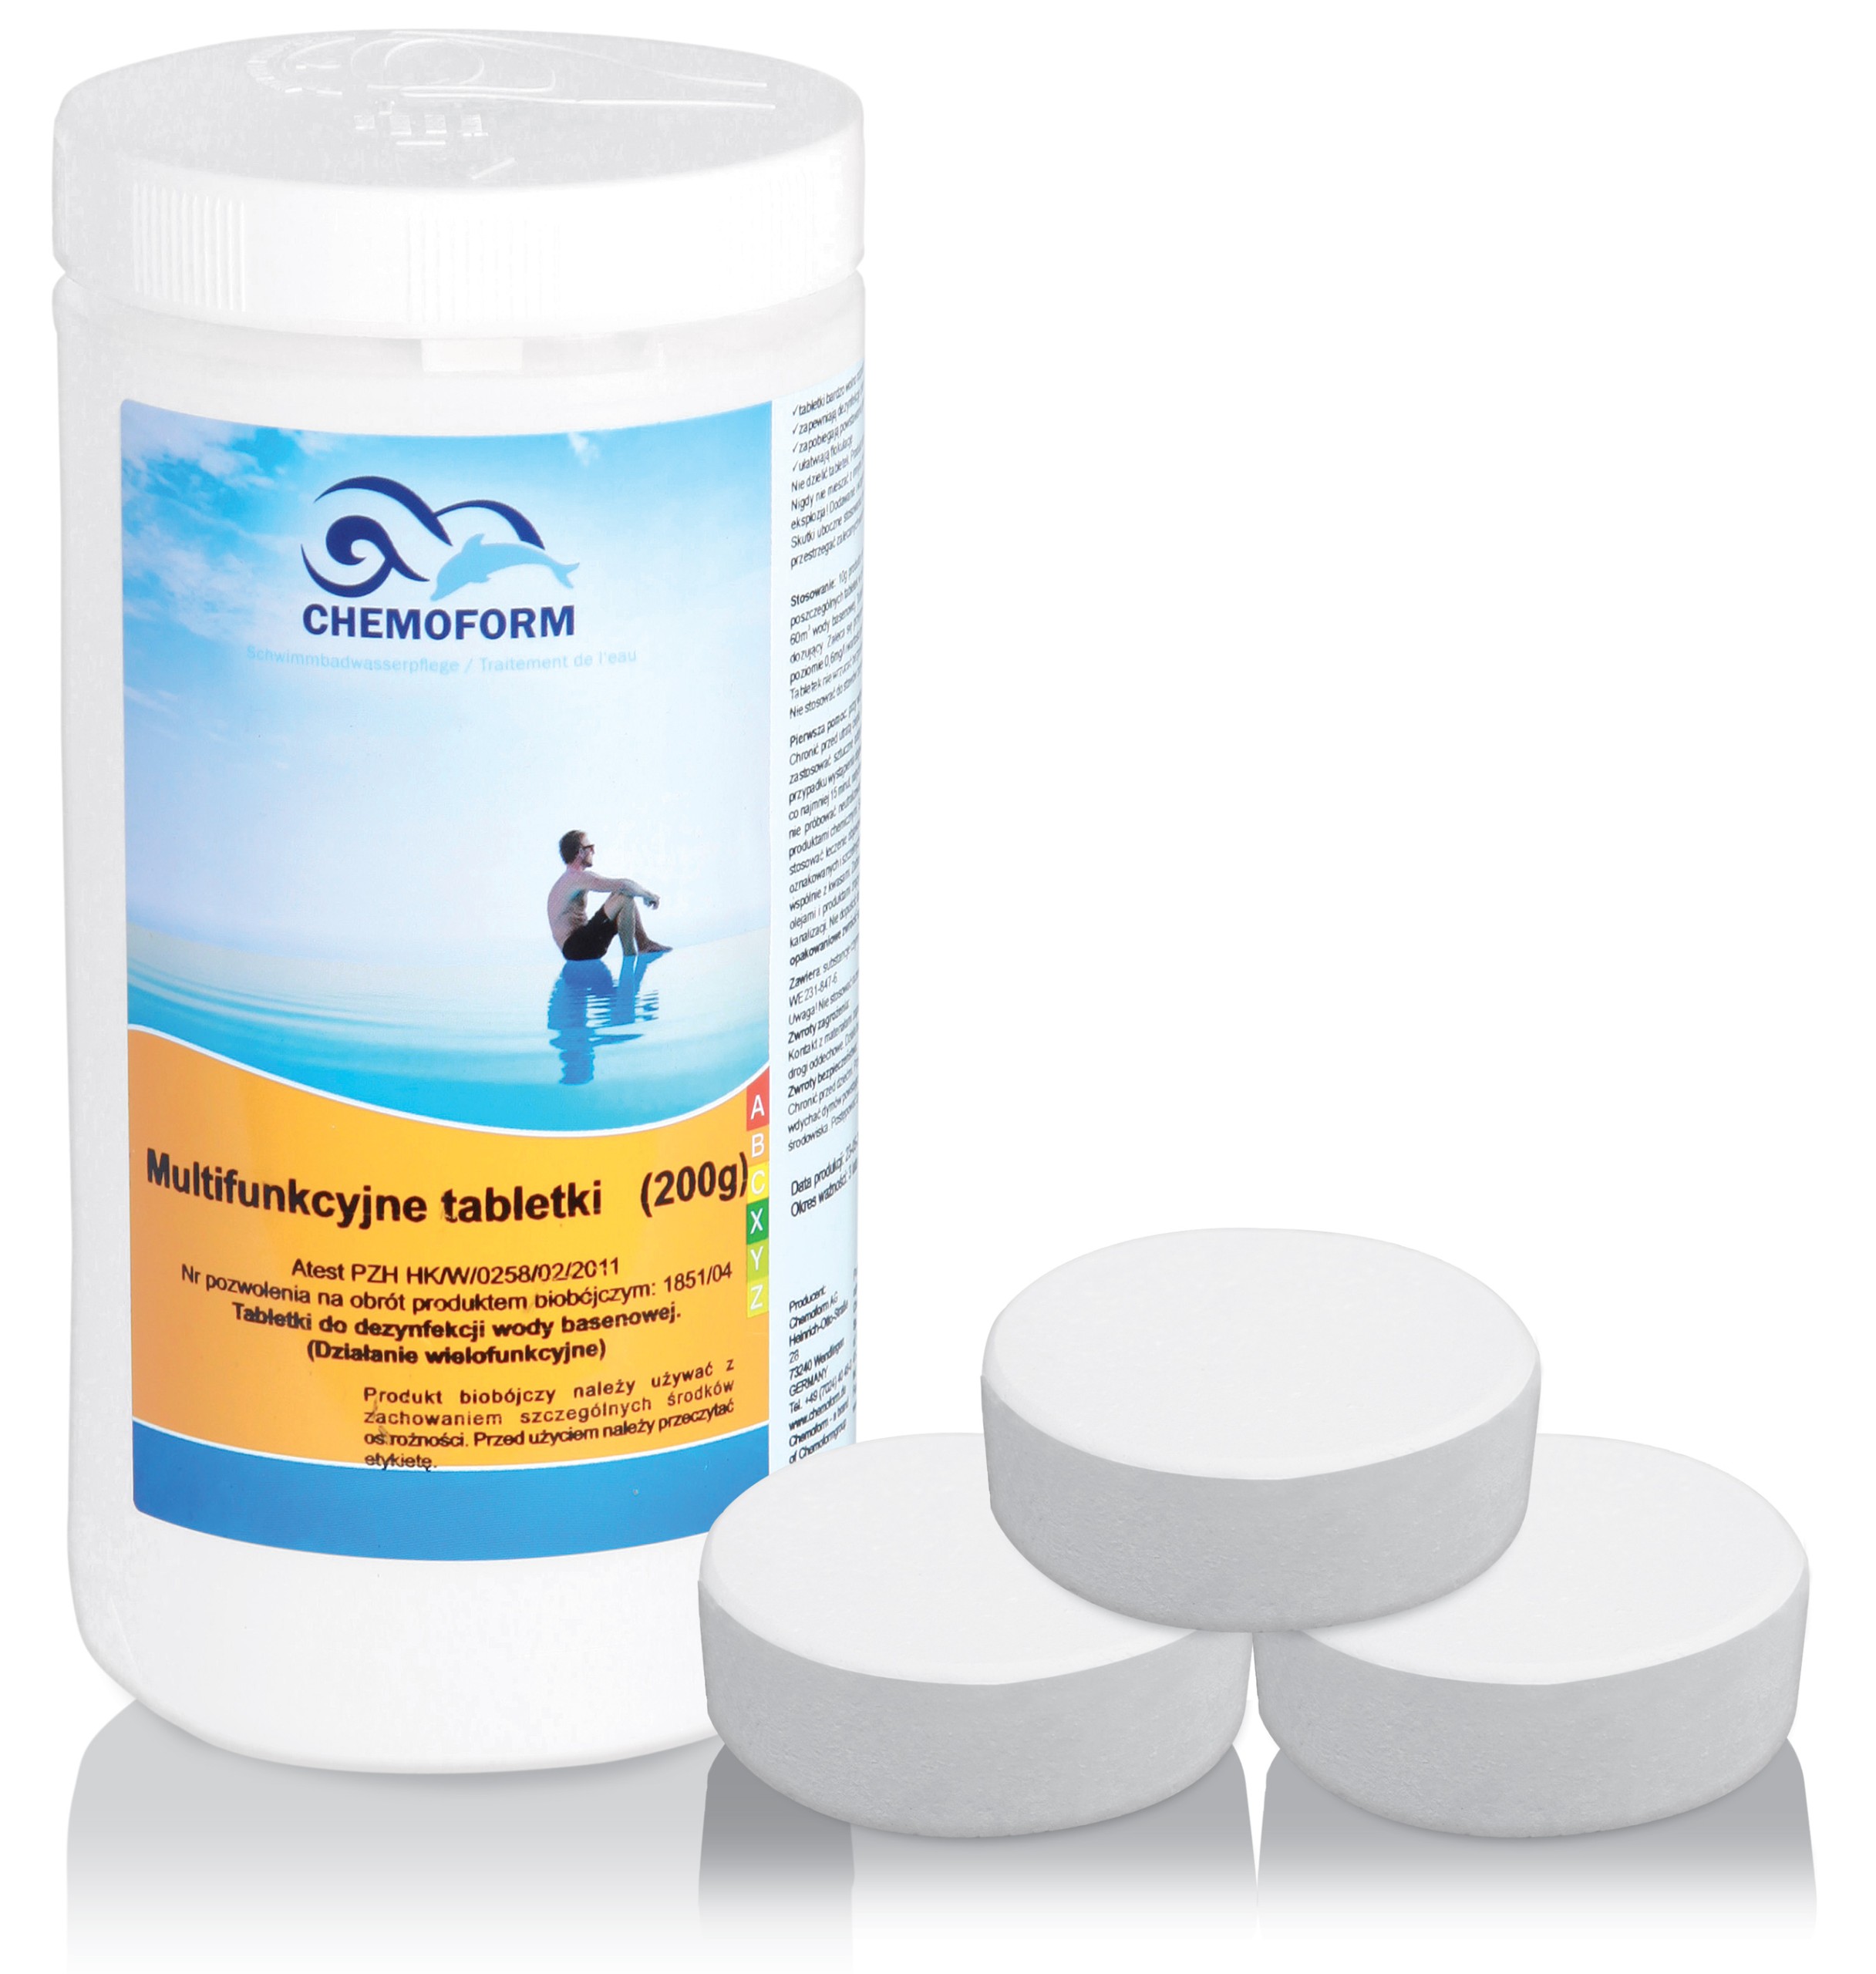 Chlór multifunkčné tablety 200g chemoform 1KG